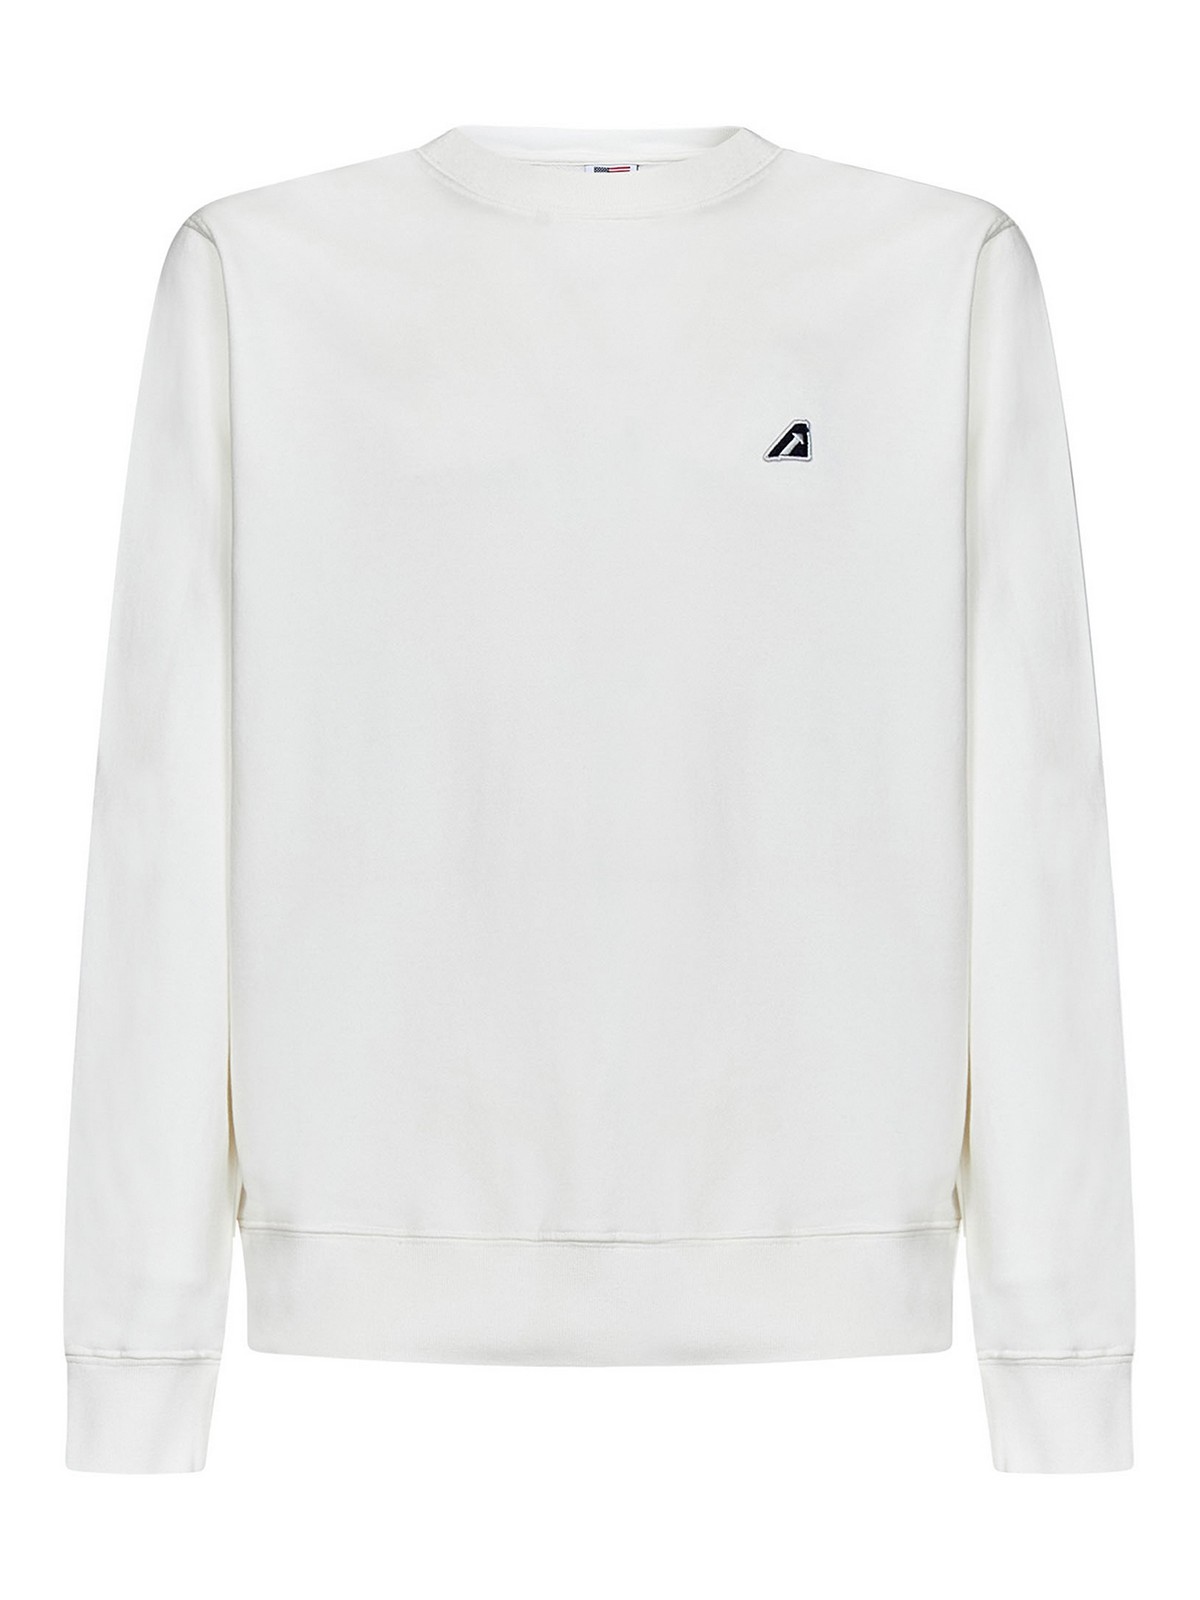 Shop Autry White Sweatshirt